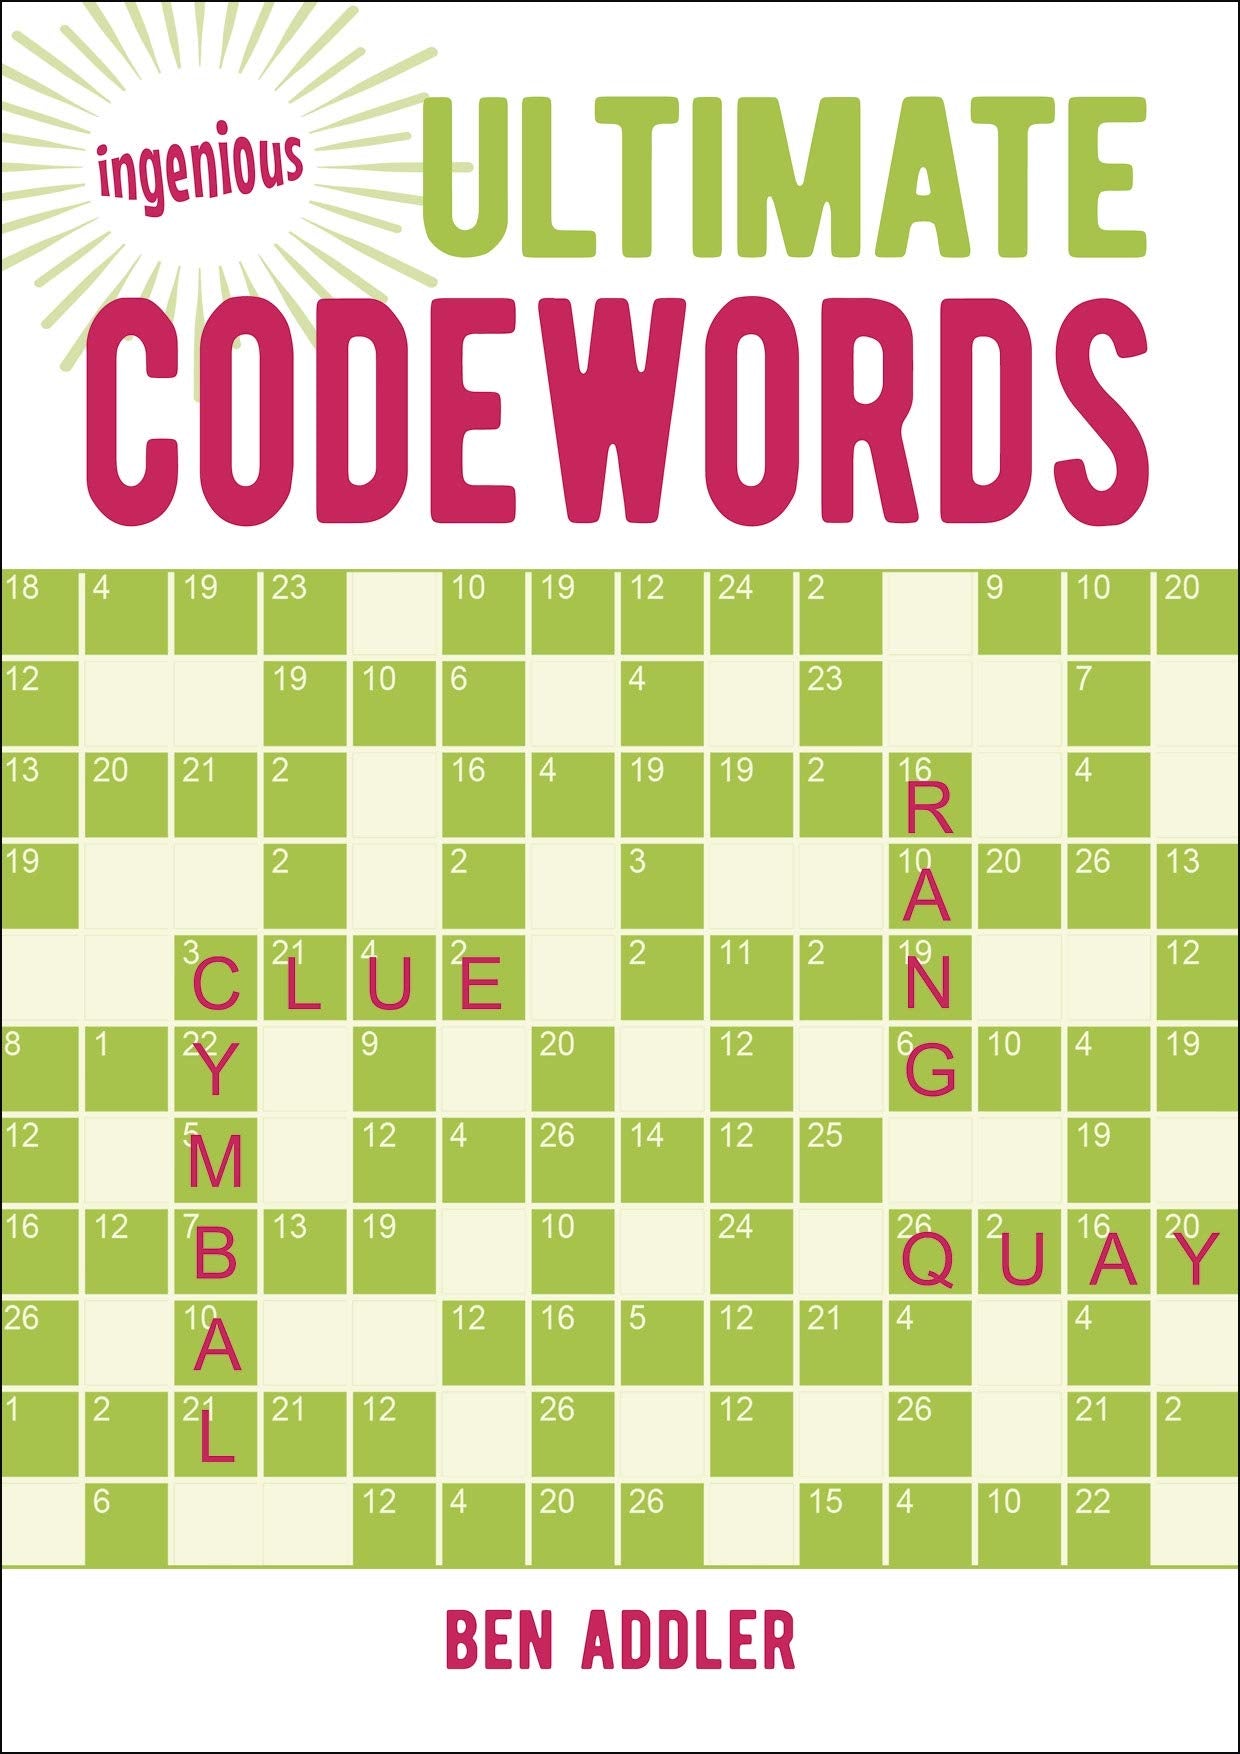 Ultimate Codewords